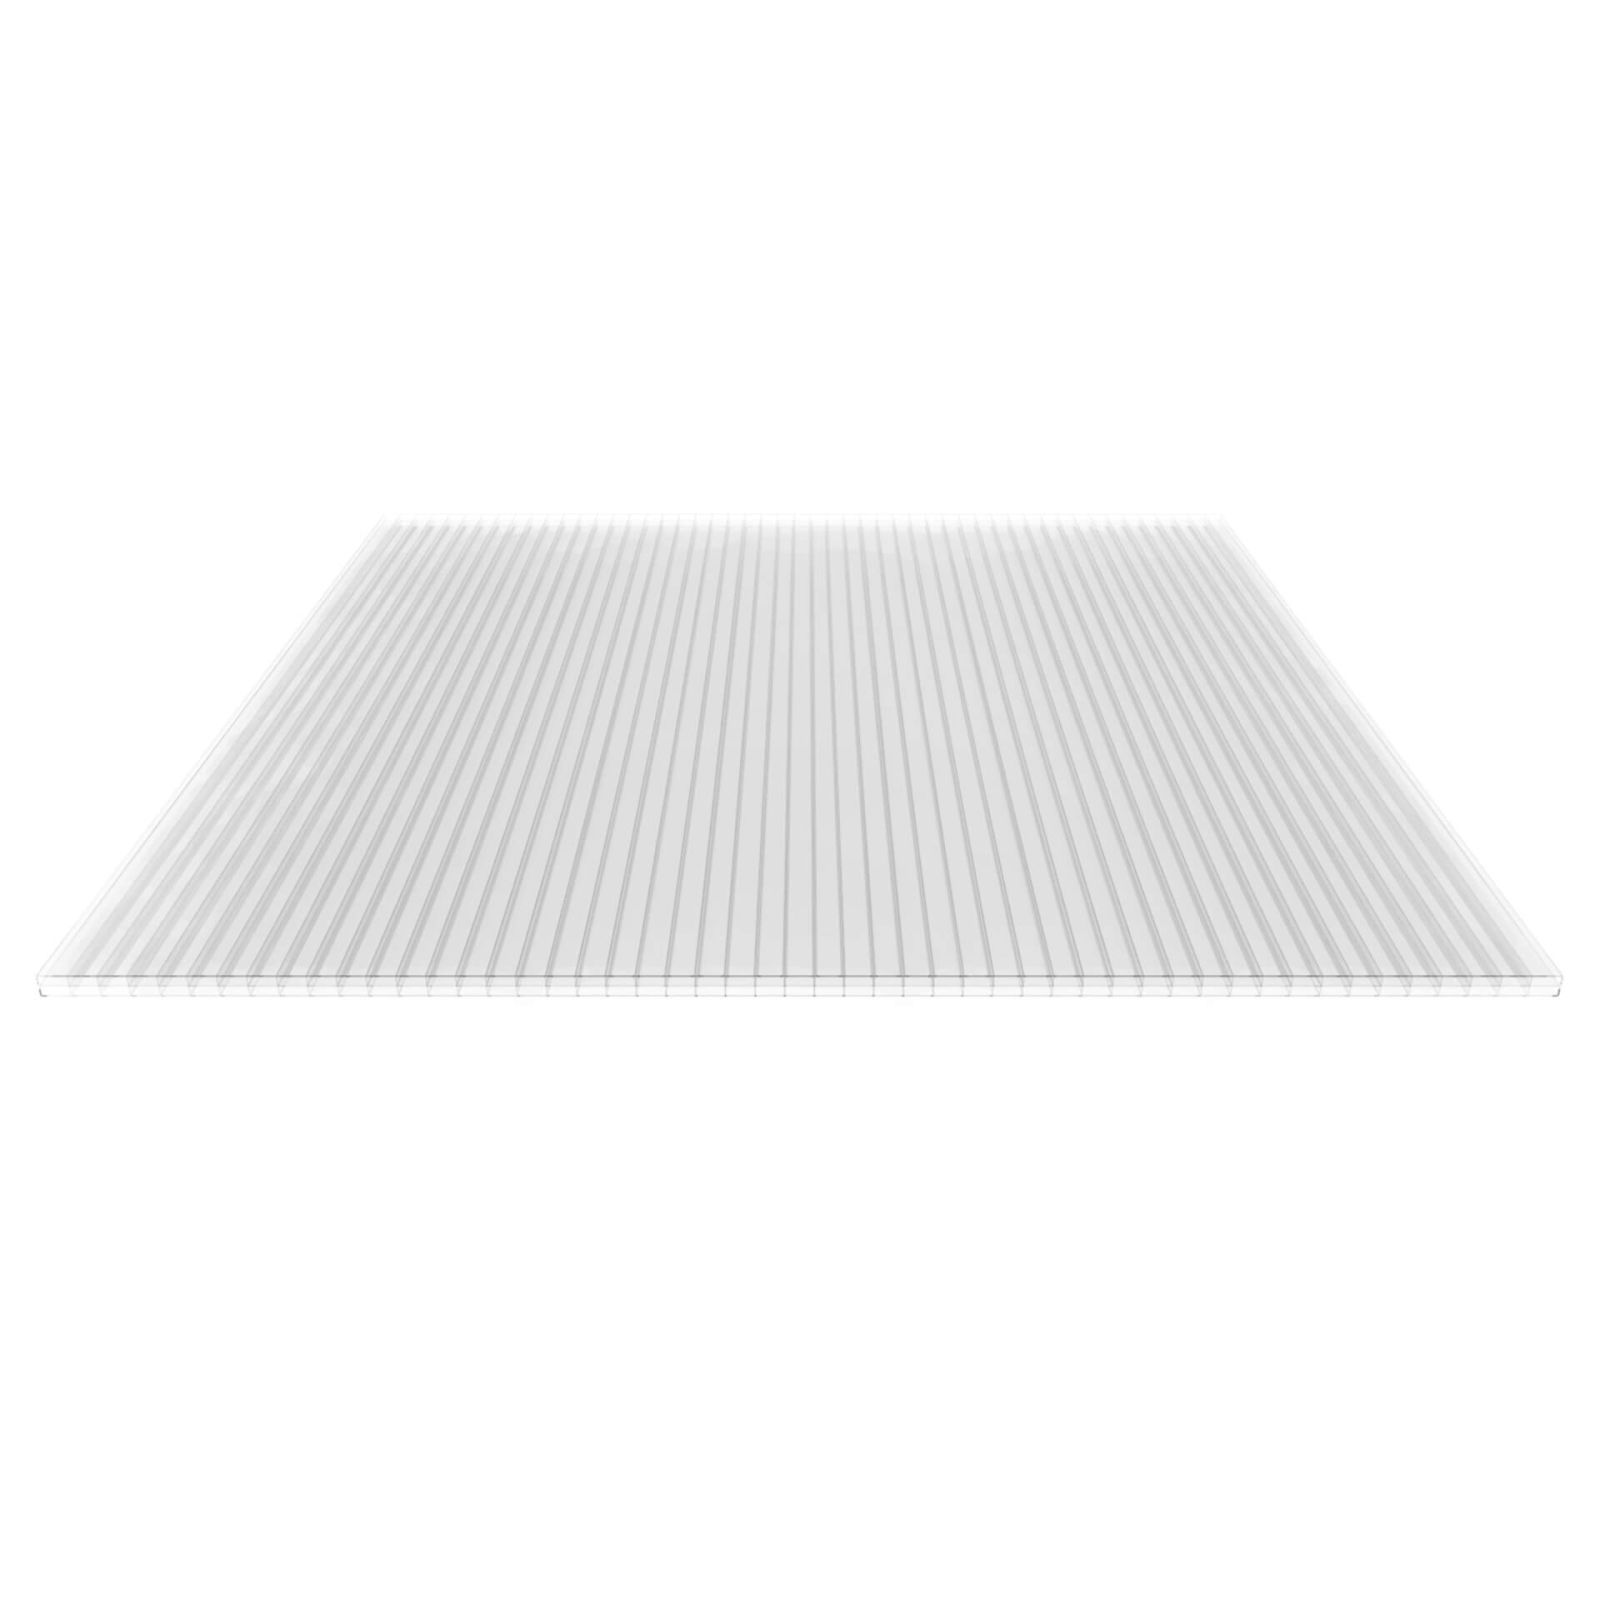 Polycarbonat Stegplatte | 16 mm | Profil Zevener Sprosse | Sparpaket | Plattenbreite 1200 mm | Klar | Breite 3,79 m | Länge 2,00 m #4